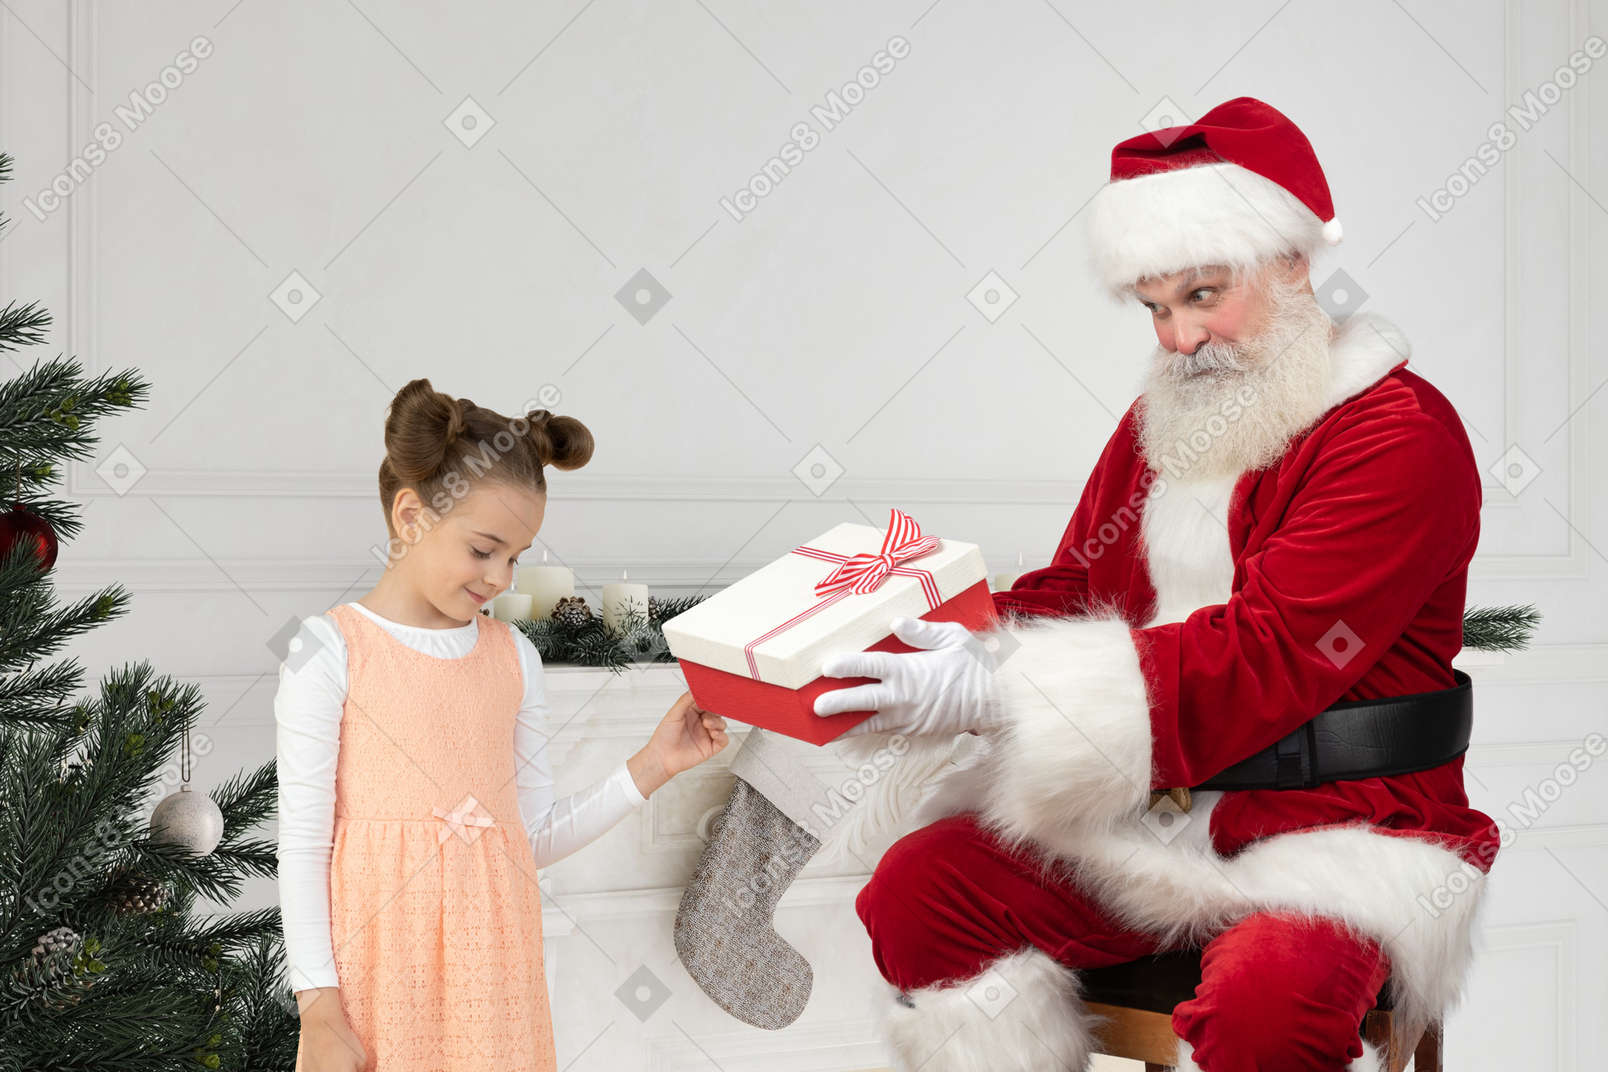 산타 클로스는 어린 소녀에게 선물을 준다